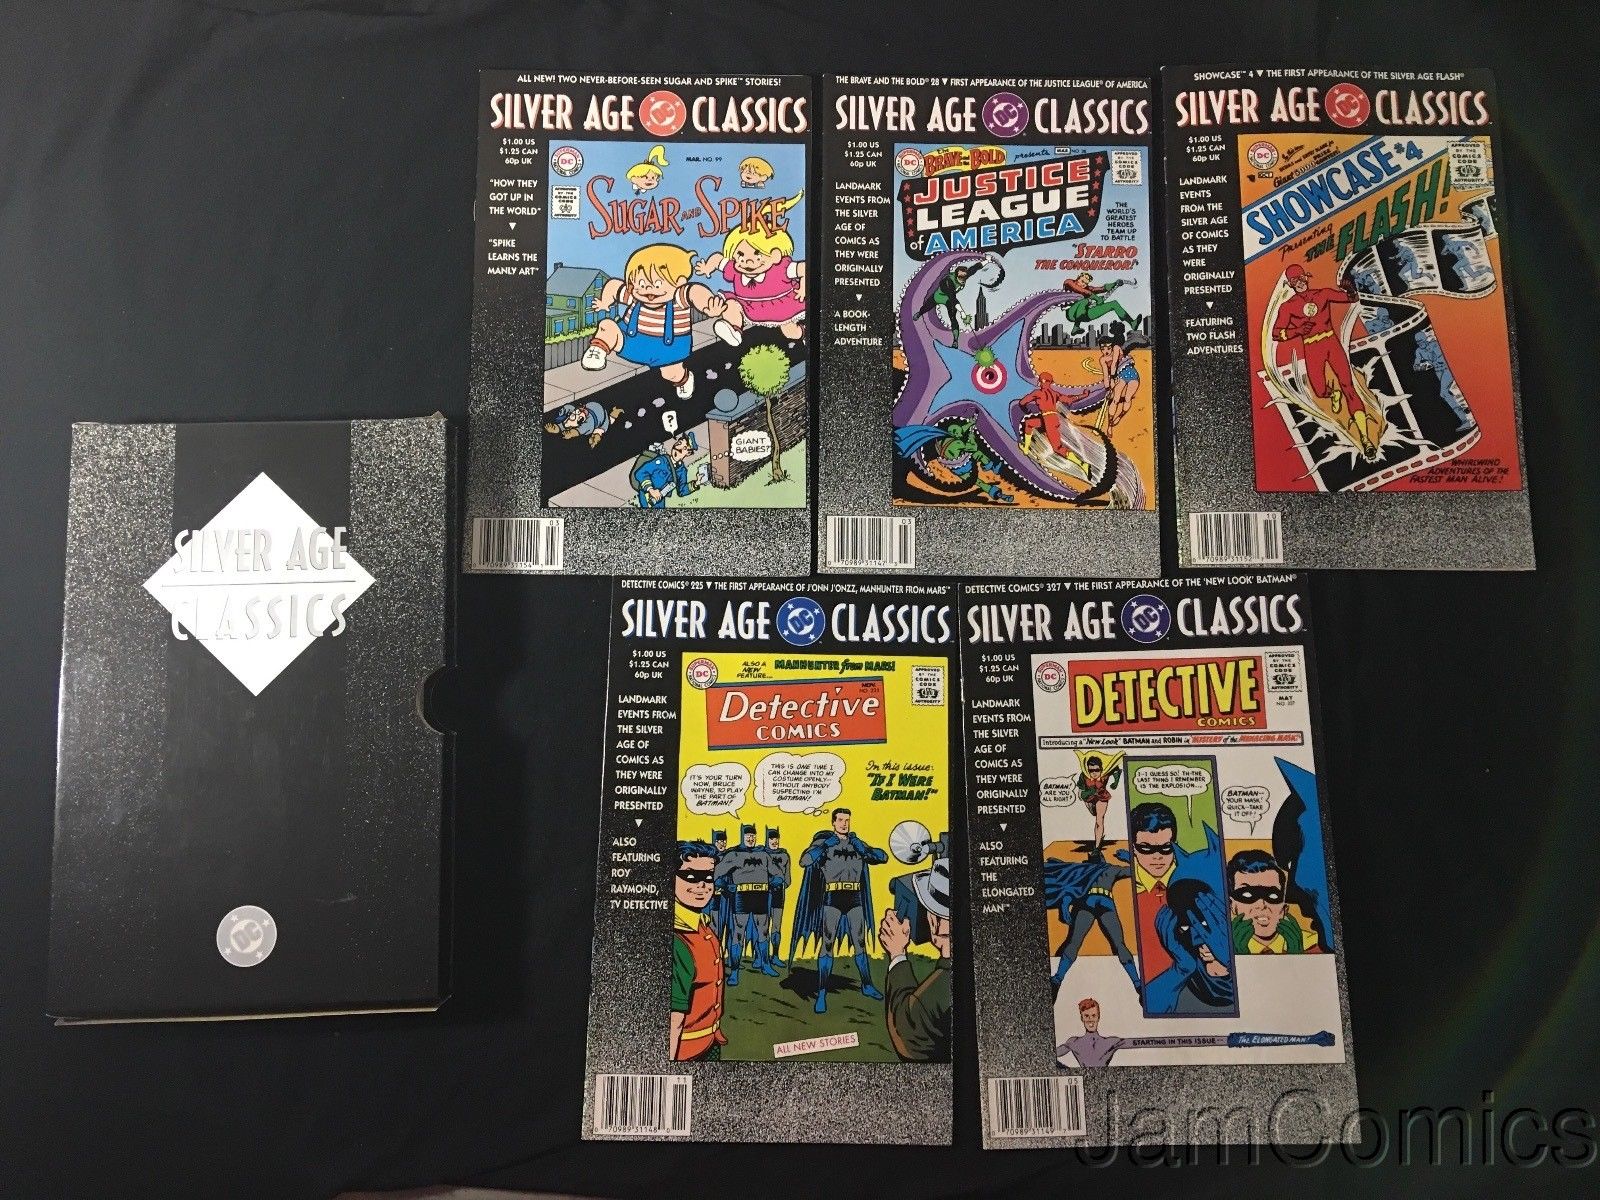 Silver Age Classics (1992) Box Set (all 10 Silver Age Classic Comics) - Used